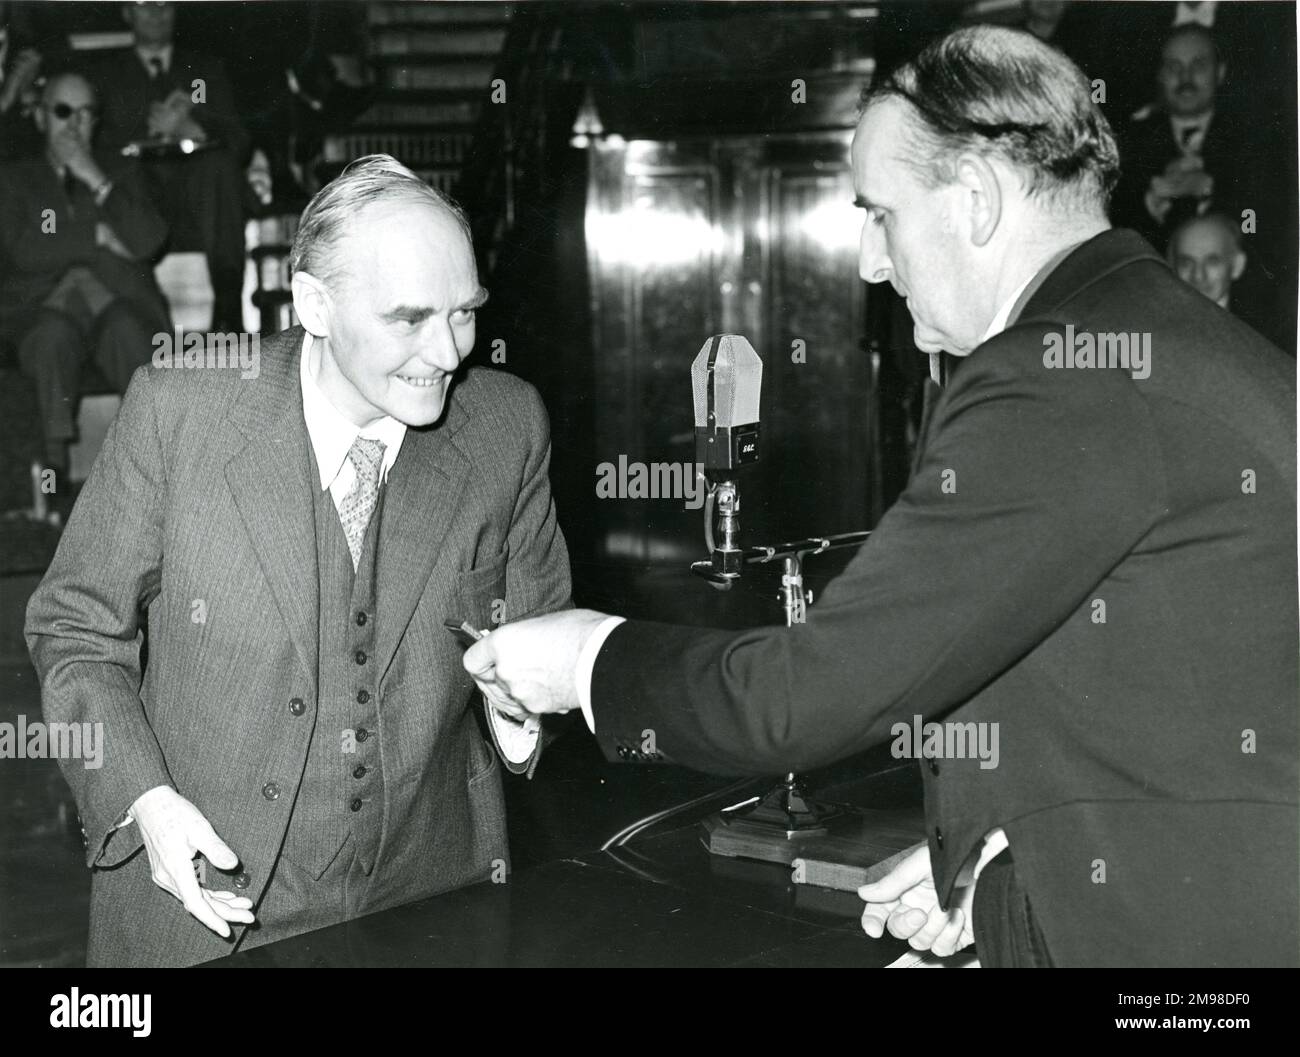 Sir Sydney Camm, CBE, FRAeS, 1893-1966, Raes Président 1954-1955, À droite, remet à Sir Geoffrey Taylor la Médaille d'or de la Royal Aeronautical Society avant la conférence Wilbur Wright de 42nd, le 20 mai 1954, à la Royal institution, 21 Albemarle Street, Londres. Banque D'Images